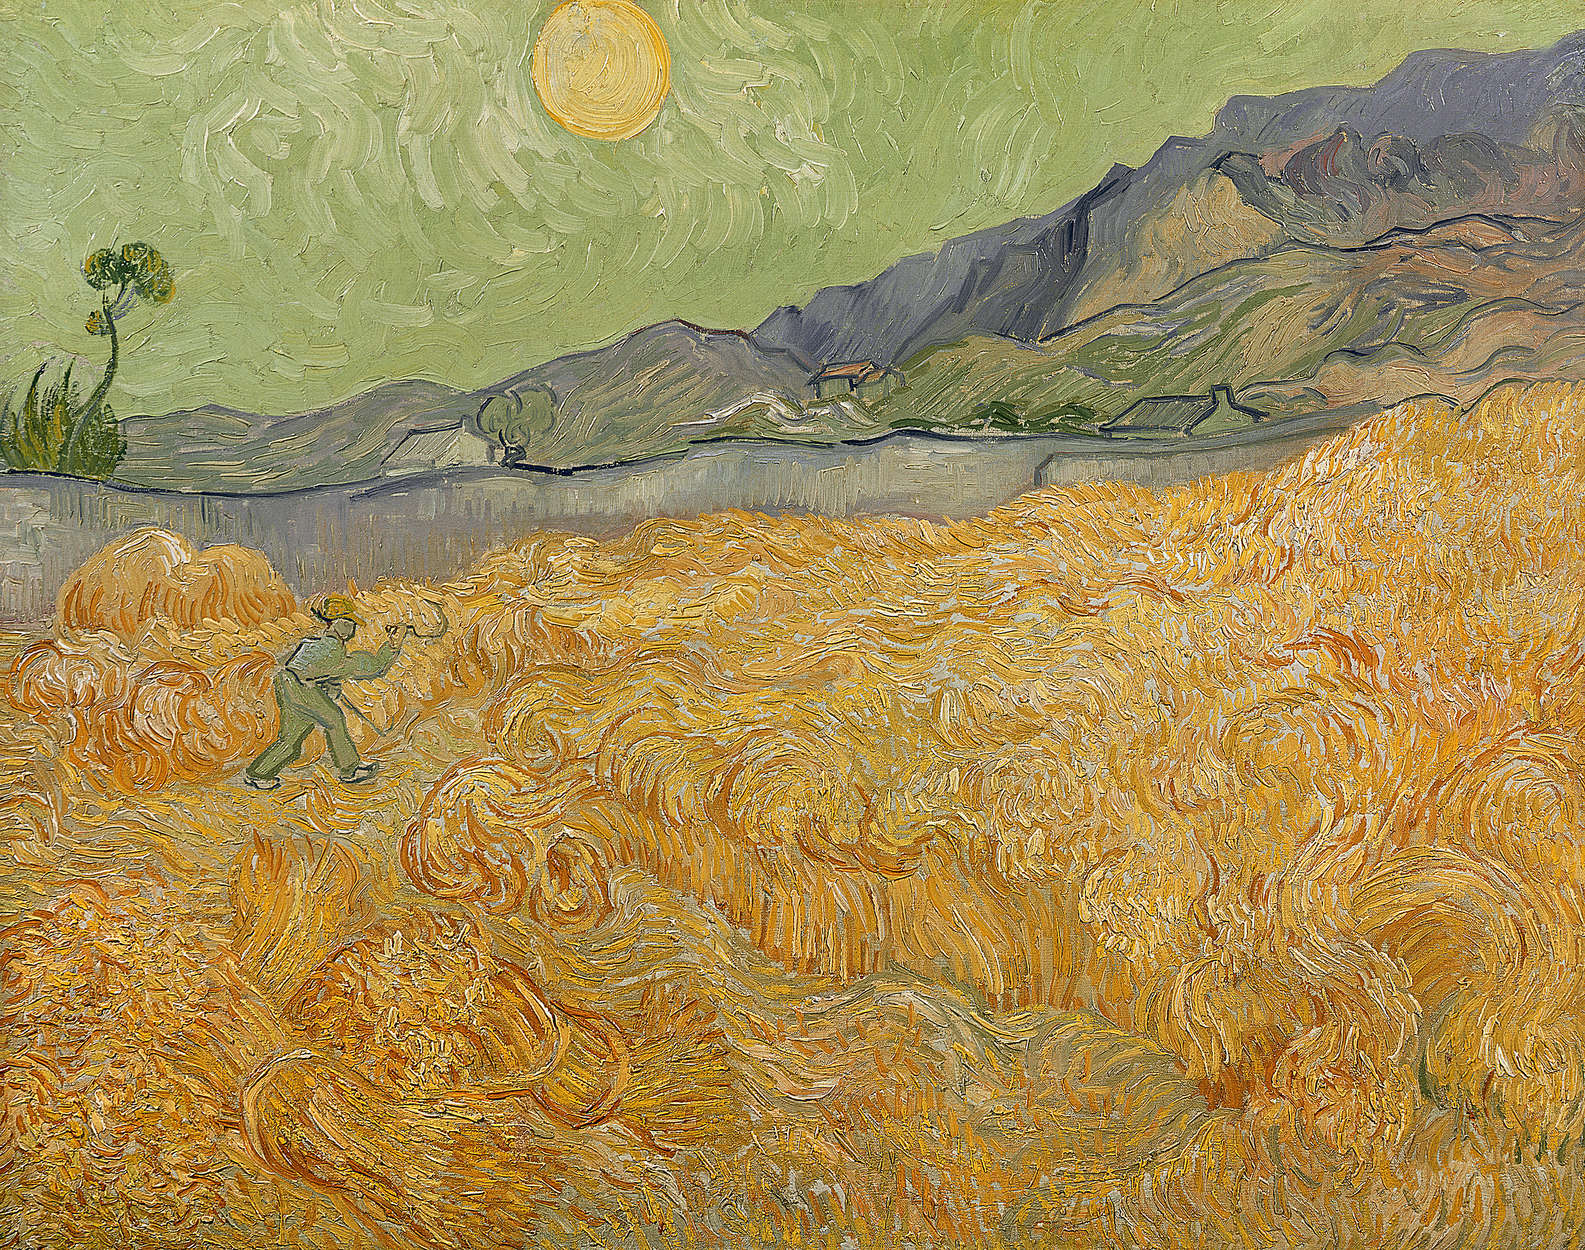             Fototapete "Weizenfeld mit Schnitter" von Vincent van Gogh
        